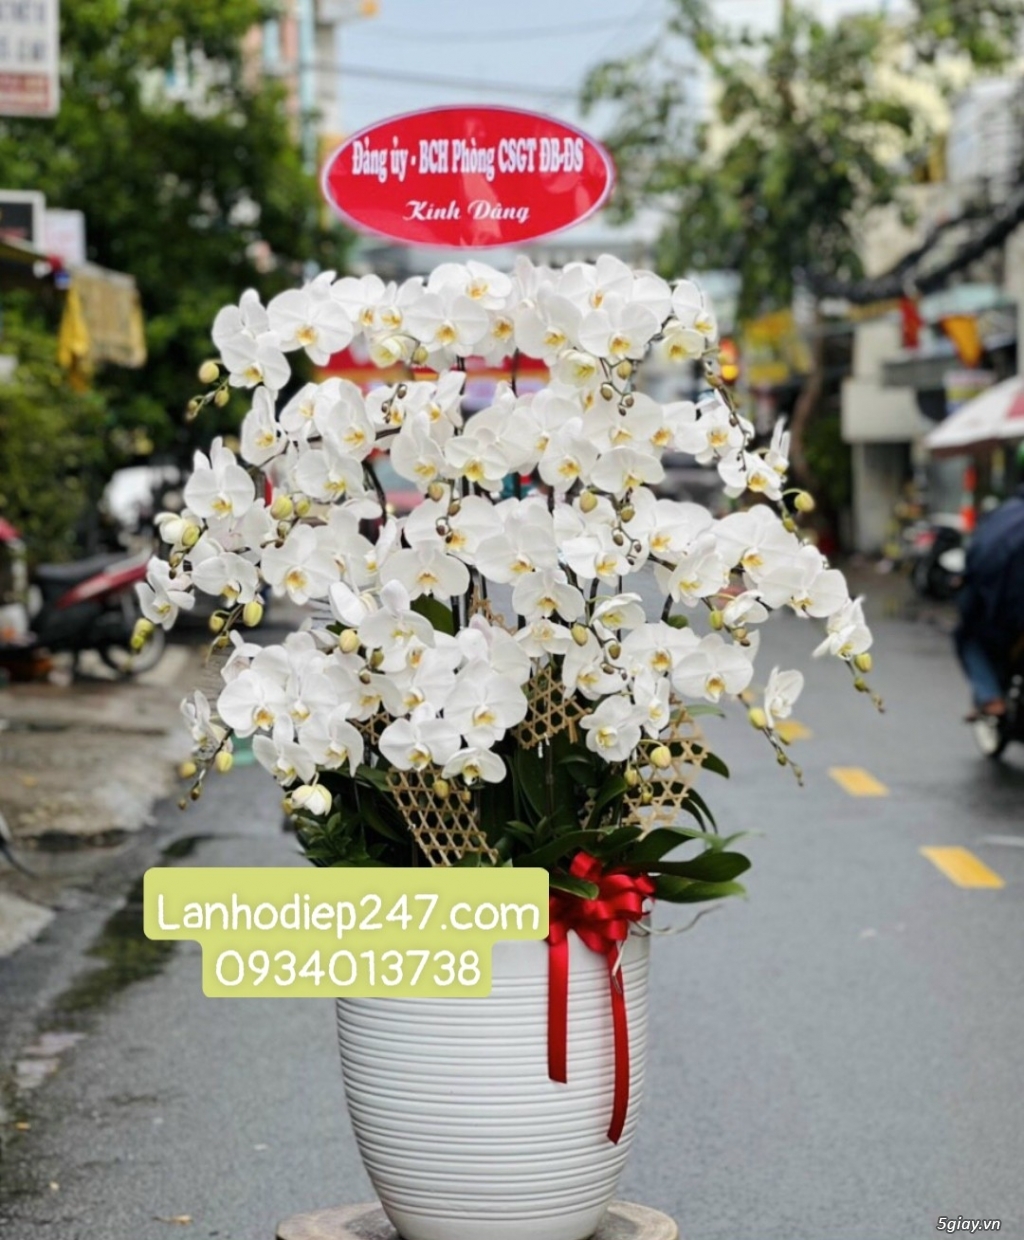 Shop hoa tươi Lan Hồ Điệp tại Thuận An Bình Dương 0934013738 - 11